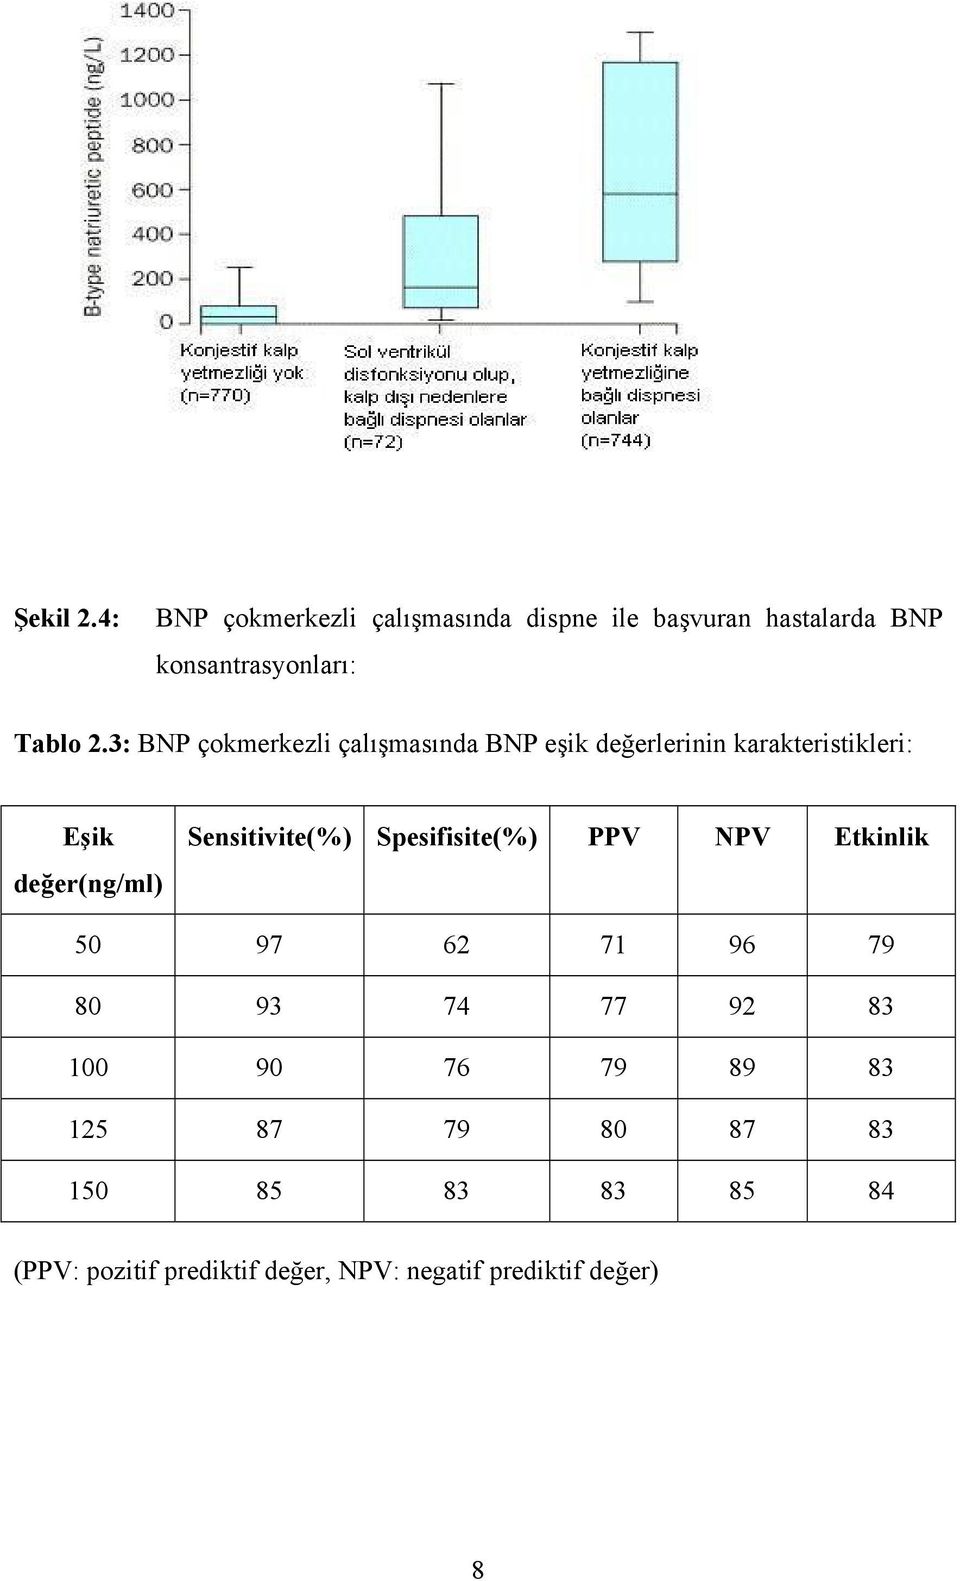 3: BNP çokmerkezli çalışmasında BNP eşik değerlerinin karakteristikleri: Eşik değer(ng/ml)